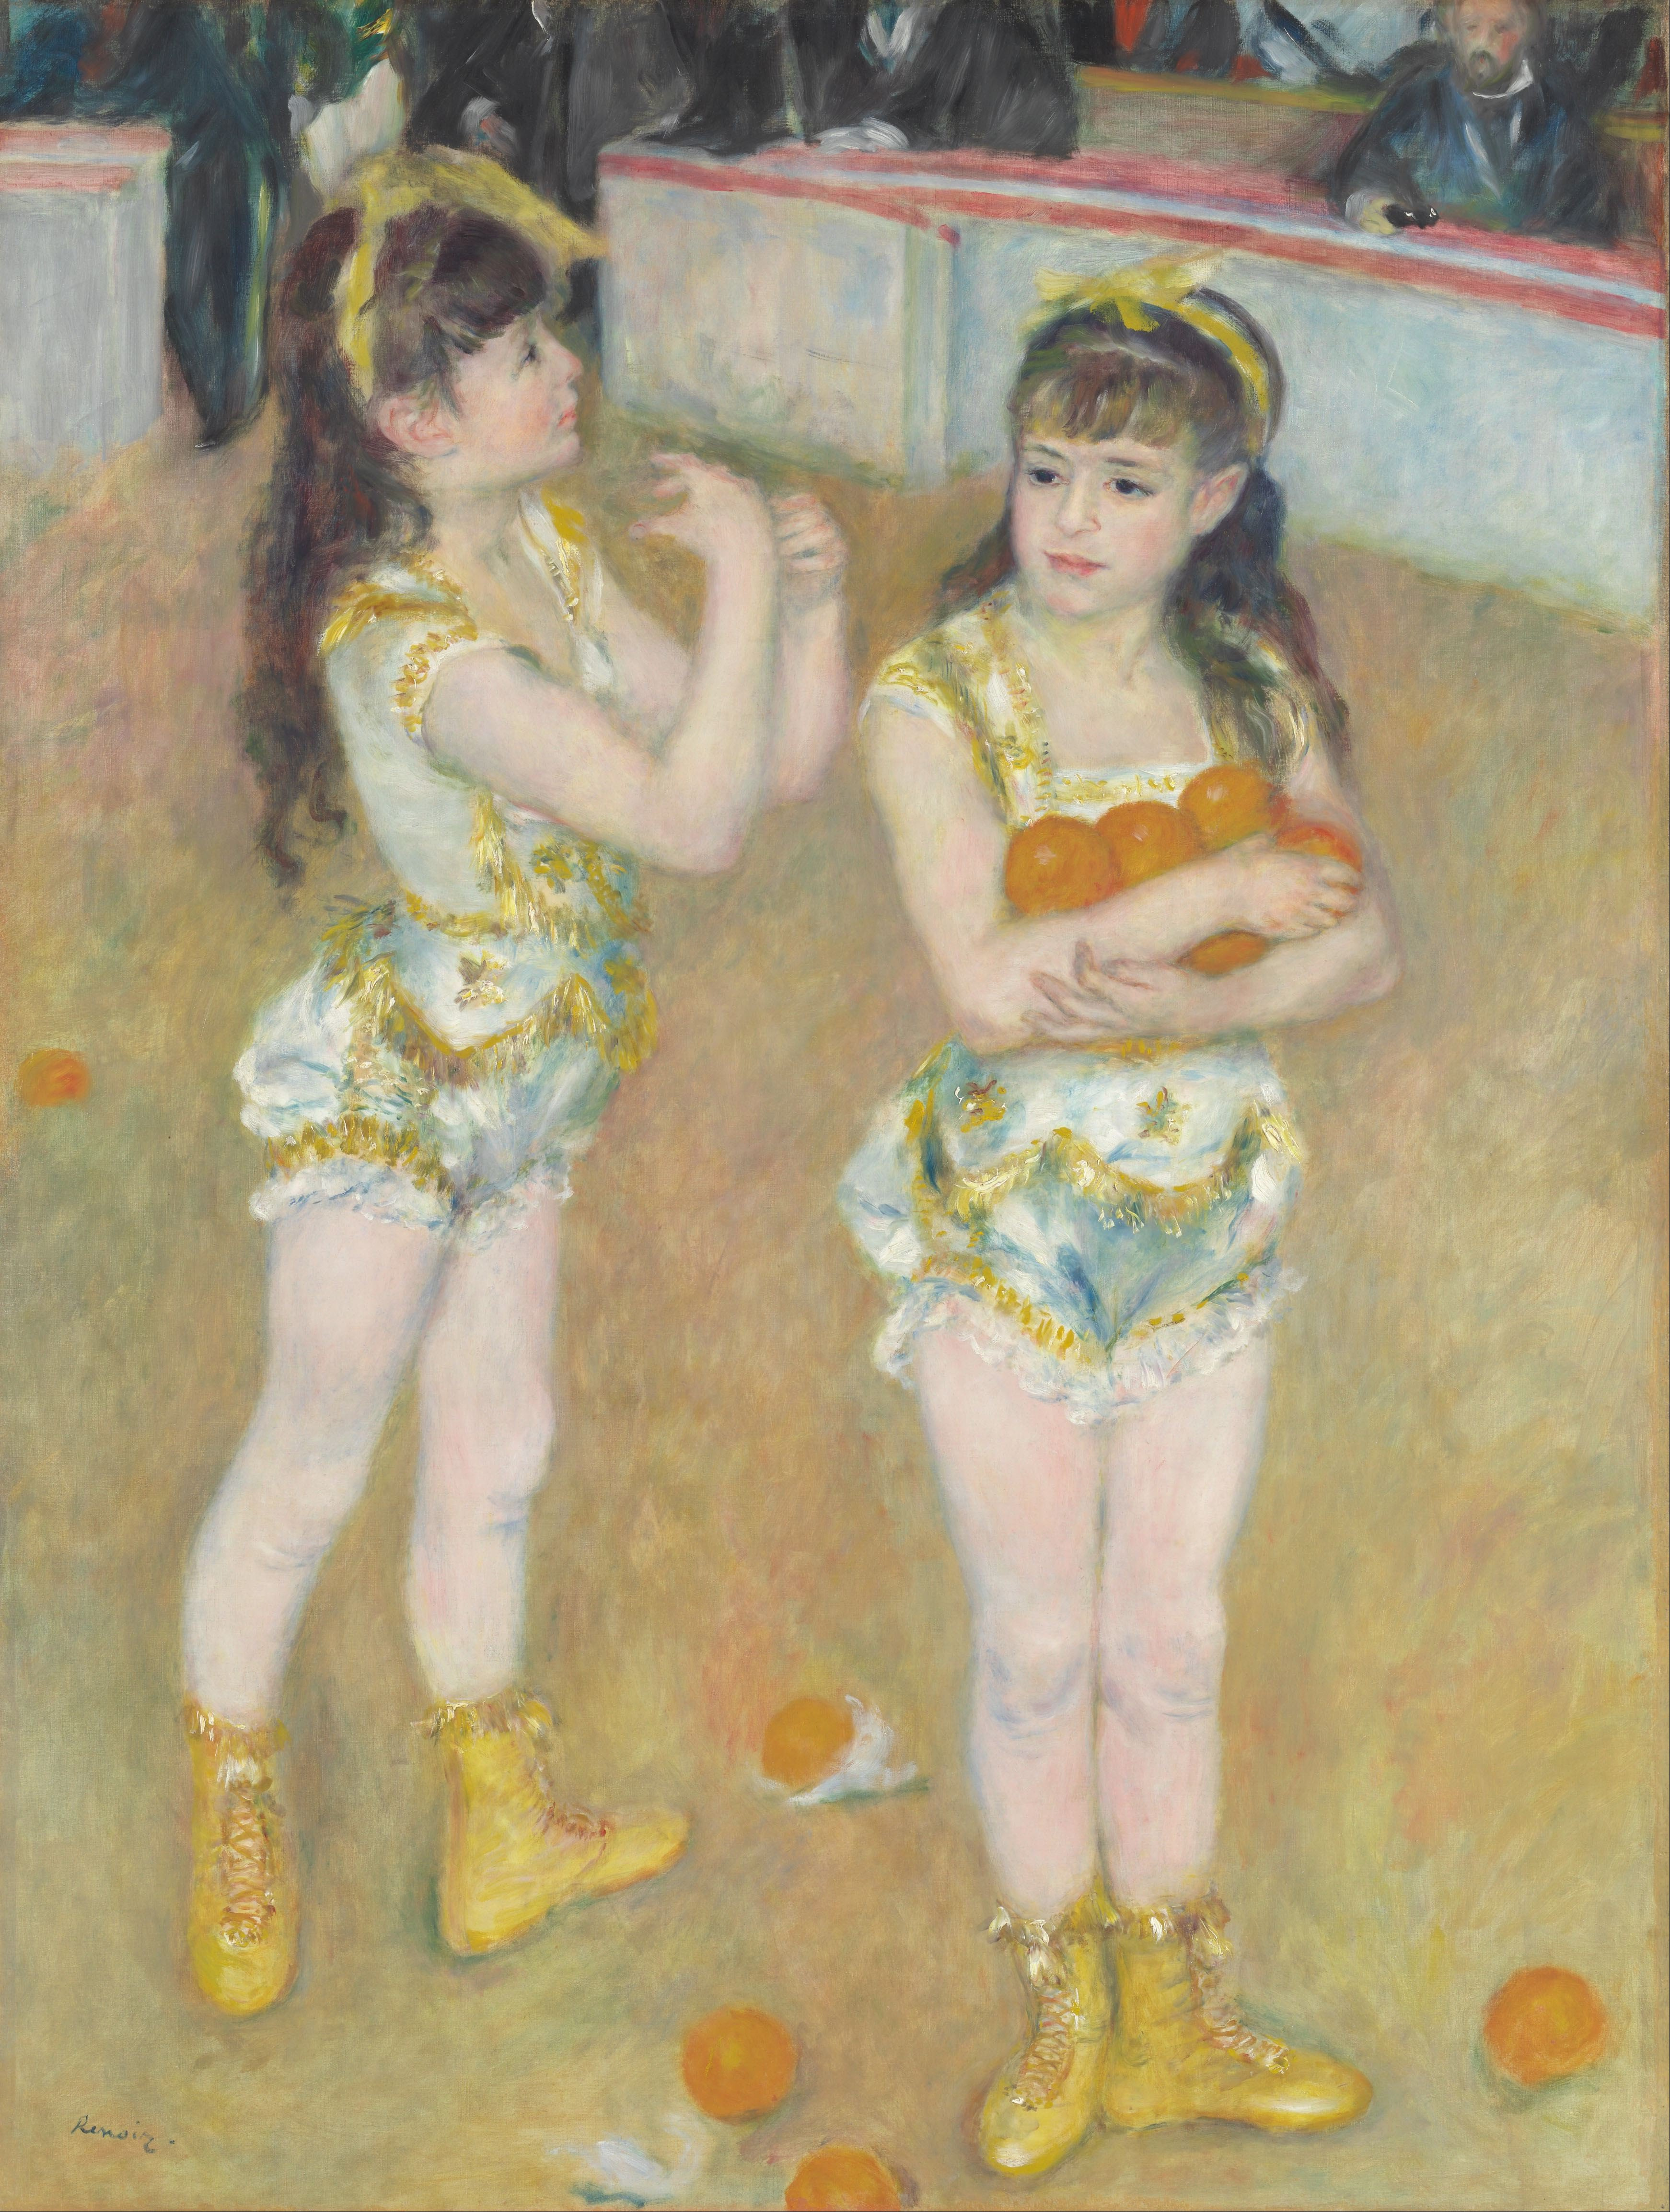 Ακροβάτριες στο Τσίρκο Φερνάντο (Φρανσίσκα και Αντζελίνα Βάρτενμπεργκ) by Pierre-Auguste Renoir - 1879 - 131.2 × 99.2 cm 